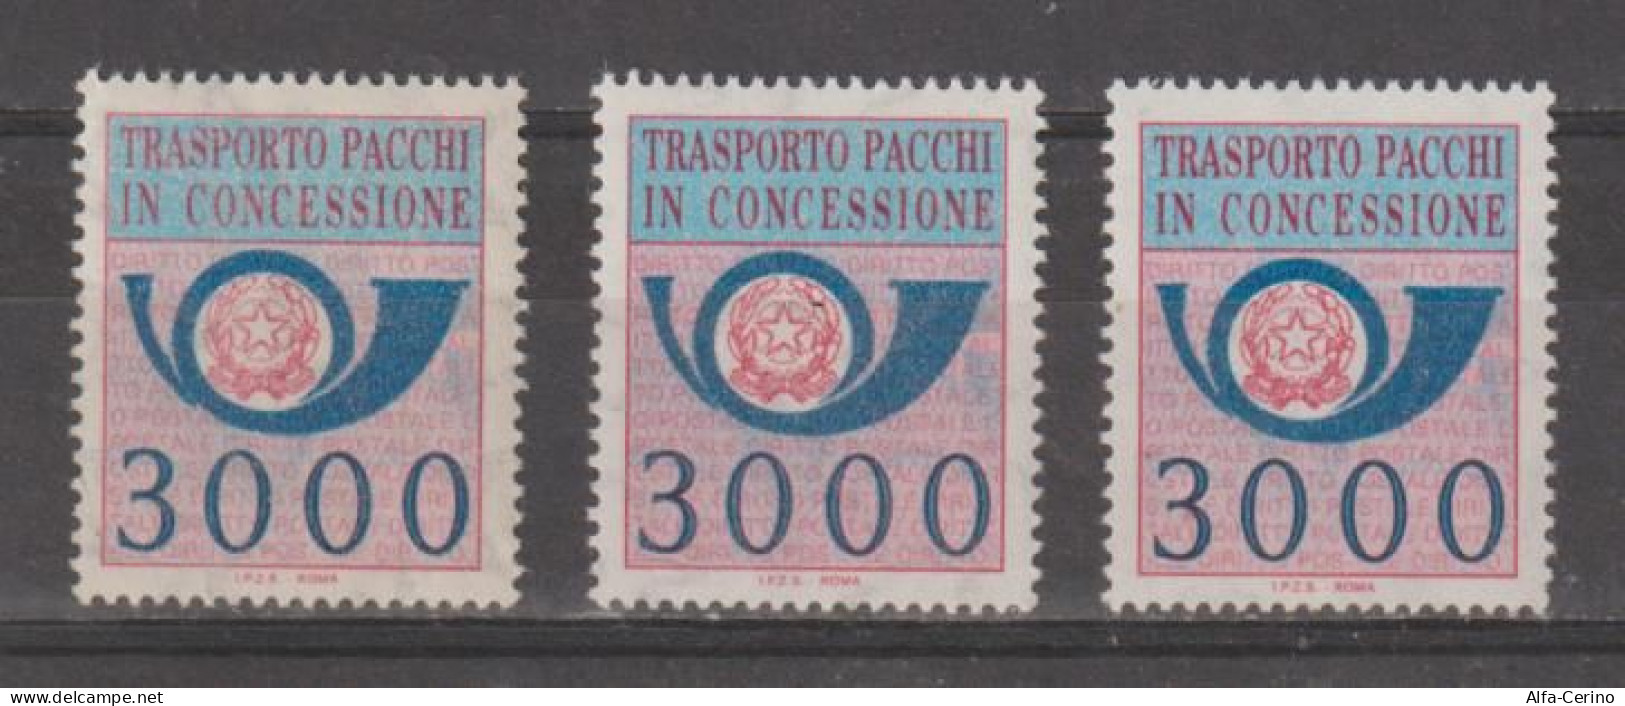 REPUBBLICA:  1984  PACCHI  IN  CONCESSIONE  -  £. 3000  AZZURRO  E  ROSA  LILLA  RIPETUTO  3  N. -  SASS. 22 - Consigned Parcels